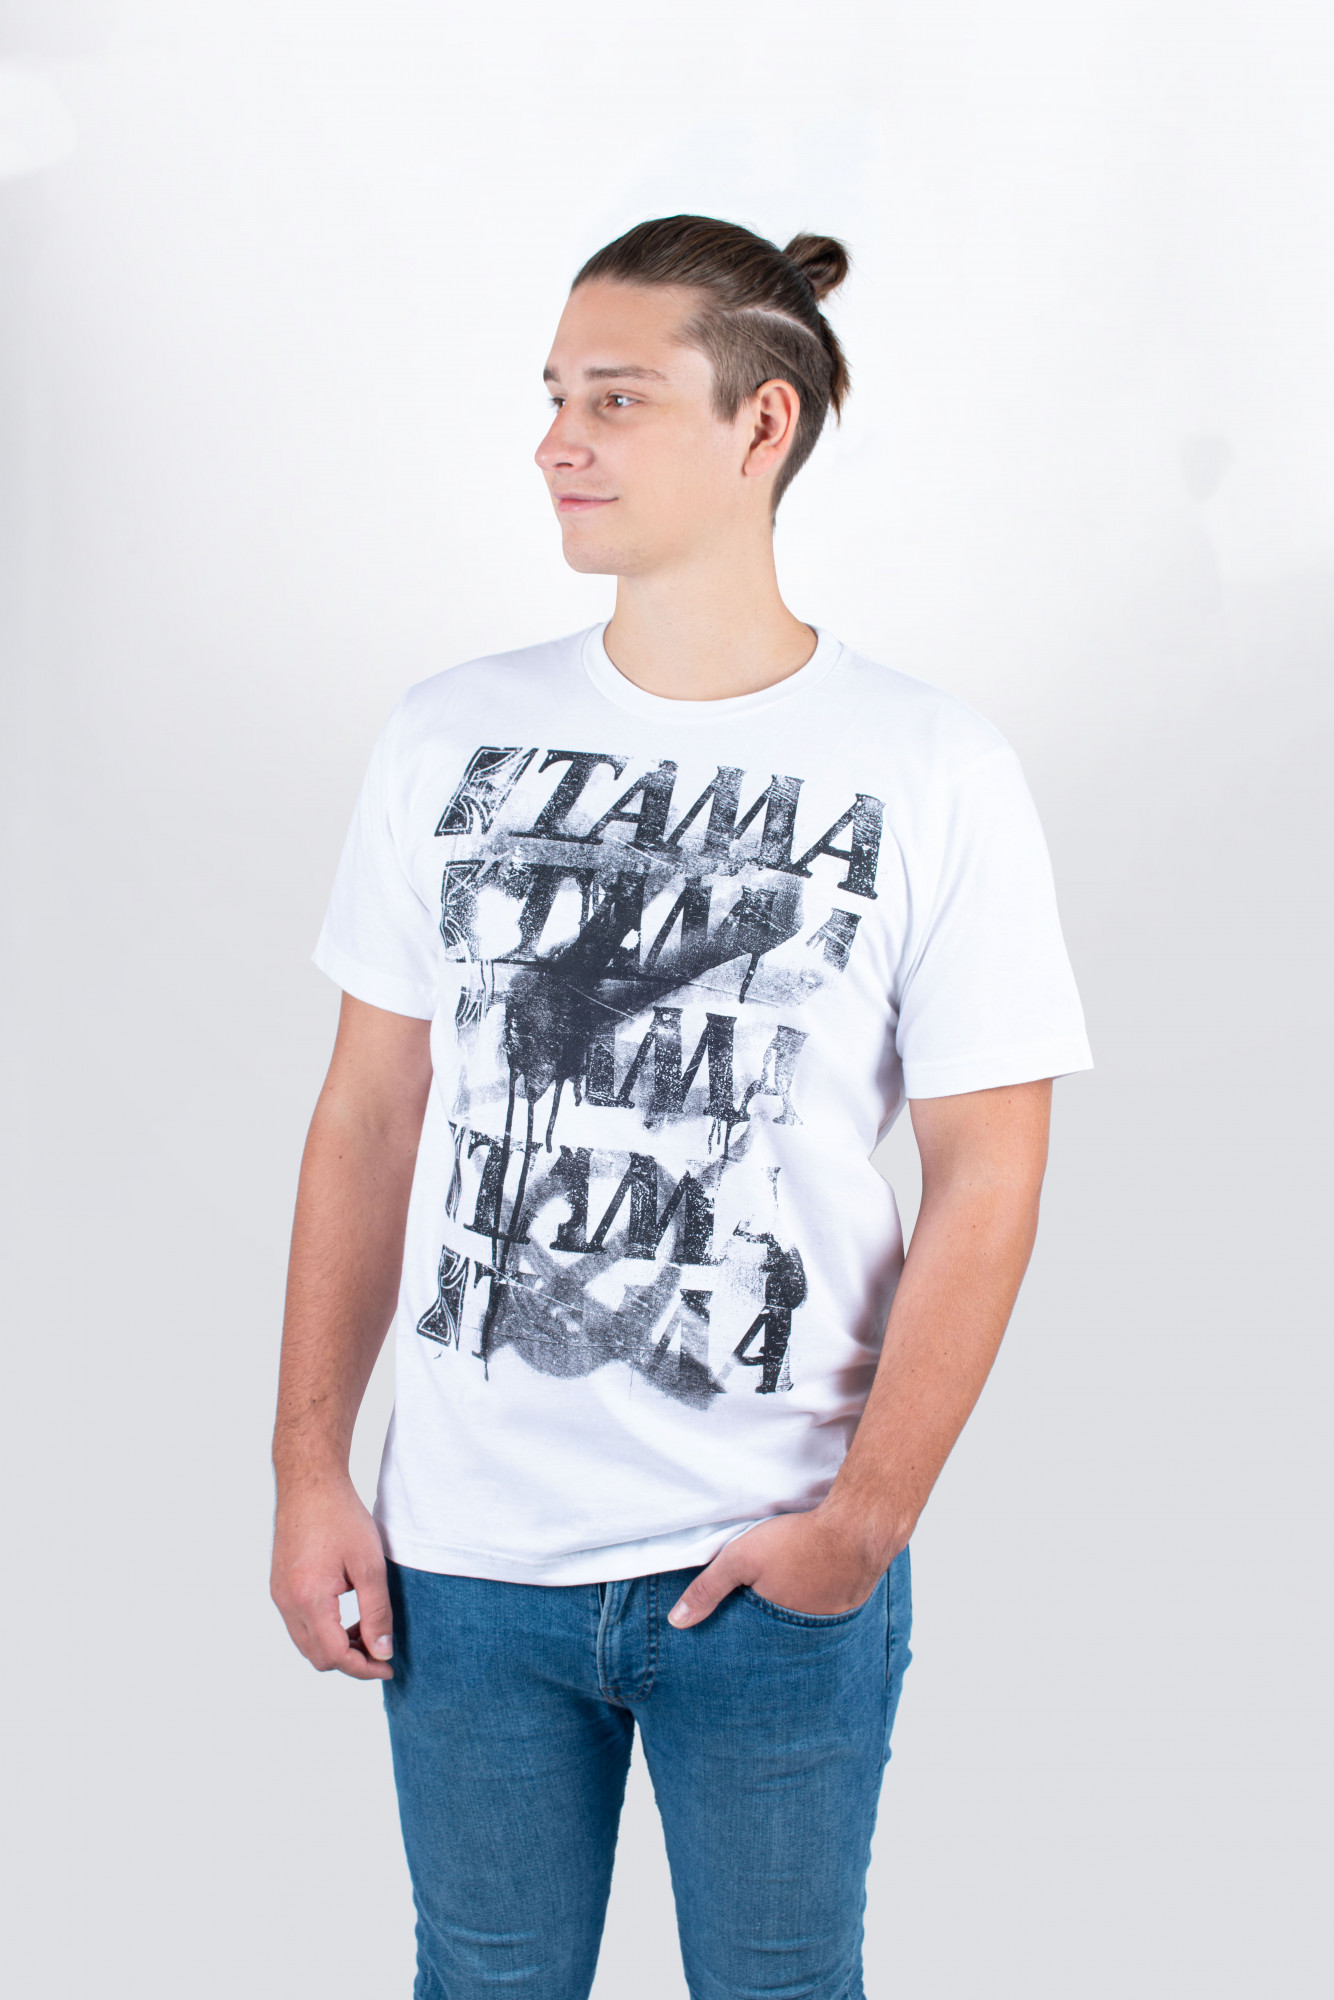 TAMA T-Shirt in weiß mit Spray Paint Frontprint (TT10GHET) | SALE | MEINL  Shop